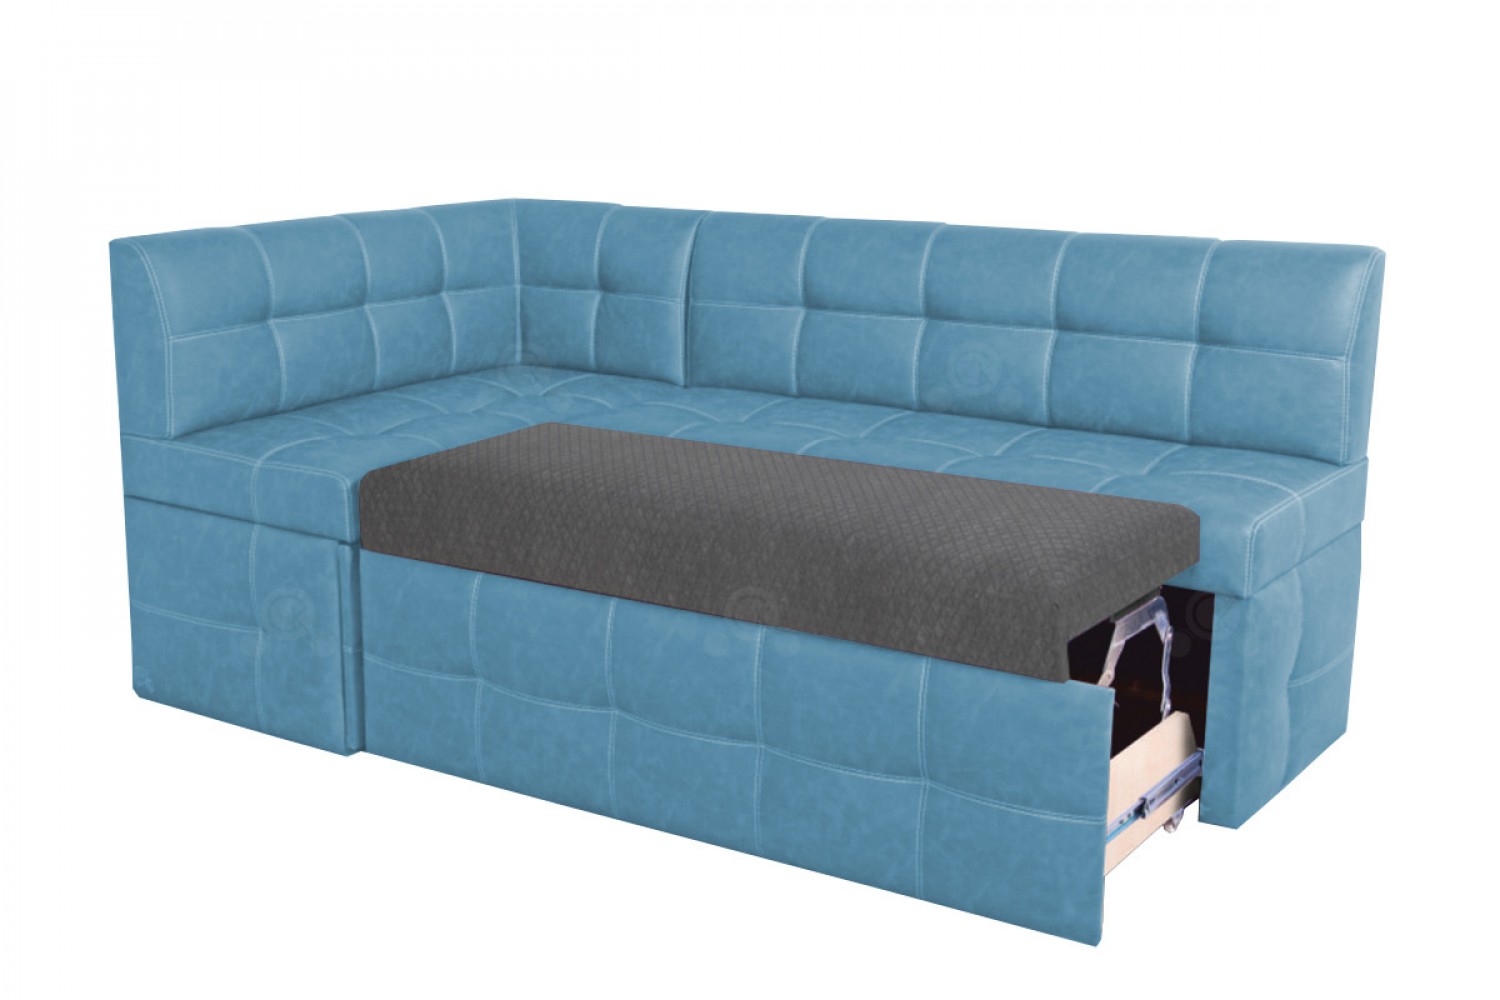 Кухонный угловой диван со спальным местом Дублин �� купить в Москве по цене33 320 руб. в интернет-магазине мебели Аната-Мебель